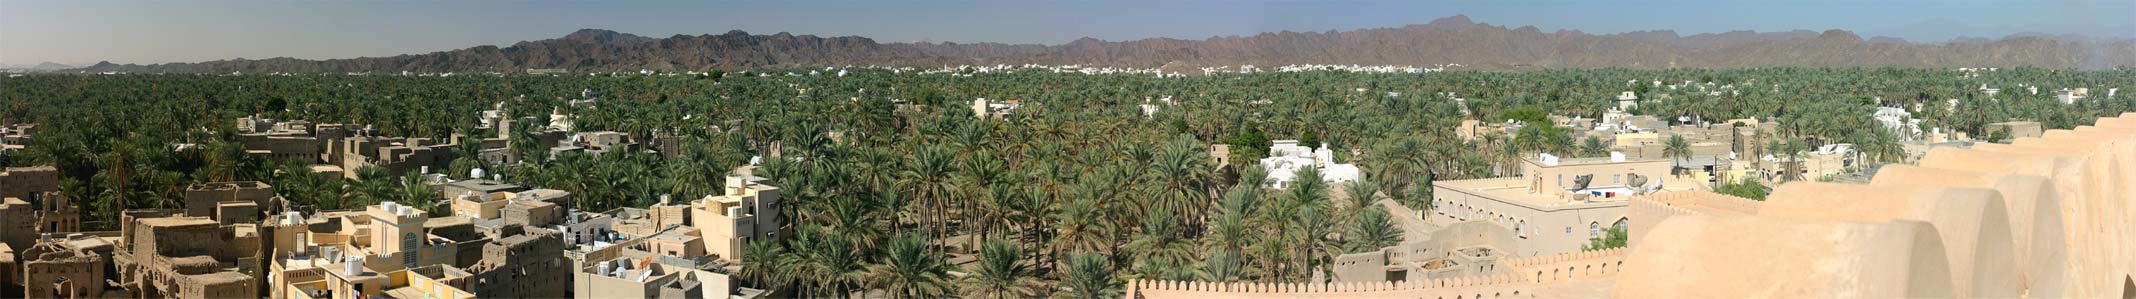 Oman 2004 Nizwa